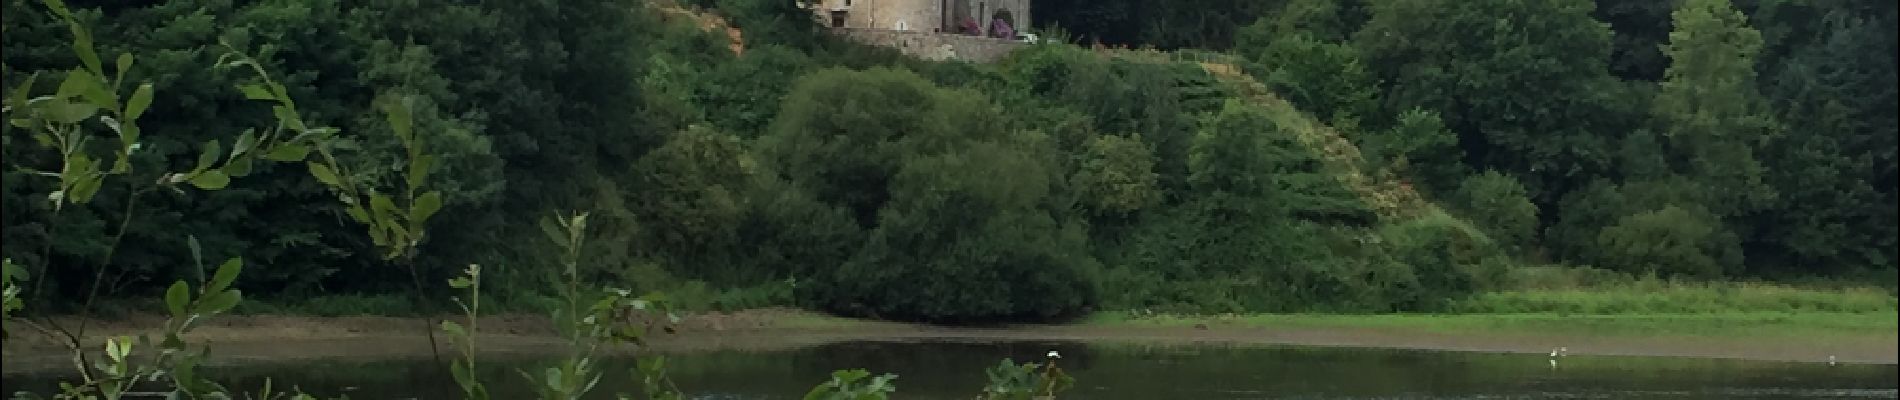 POI Guitté - Le Château de Beaumont depuis le pont - Photo